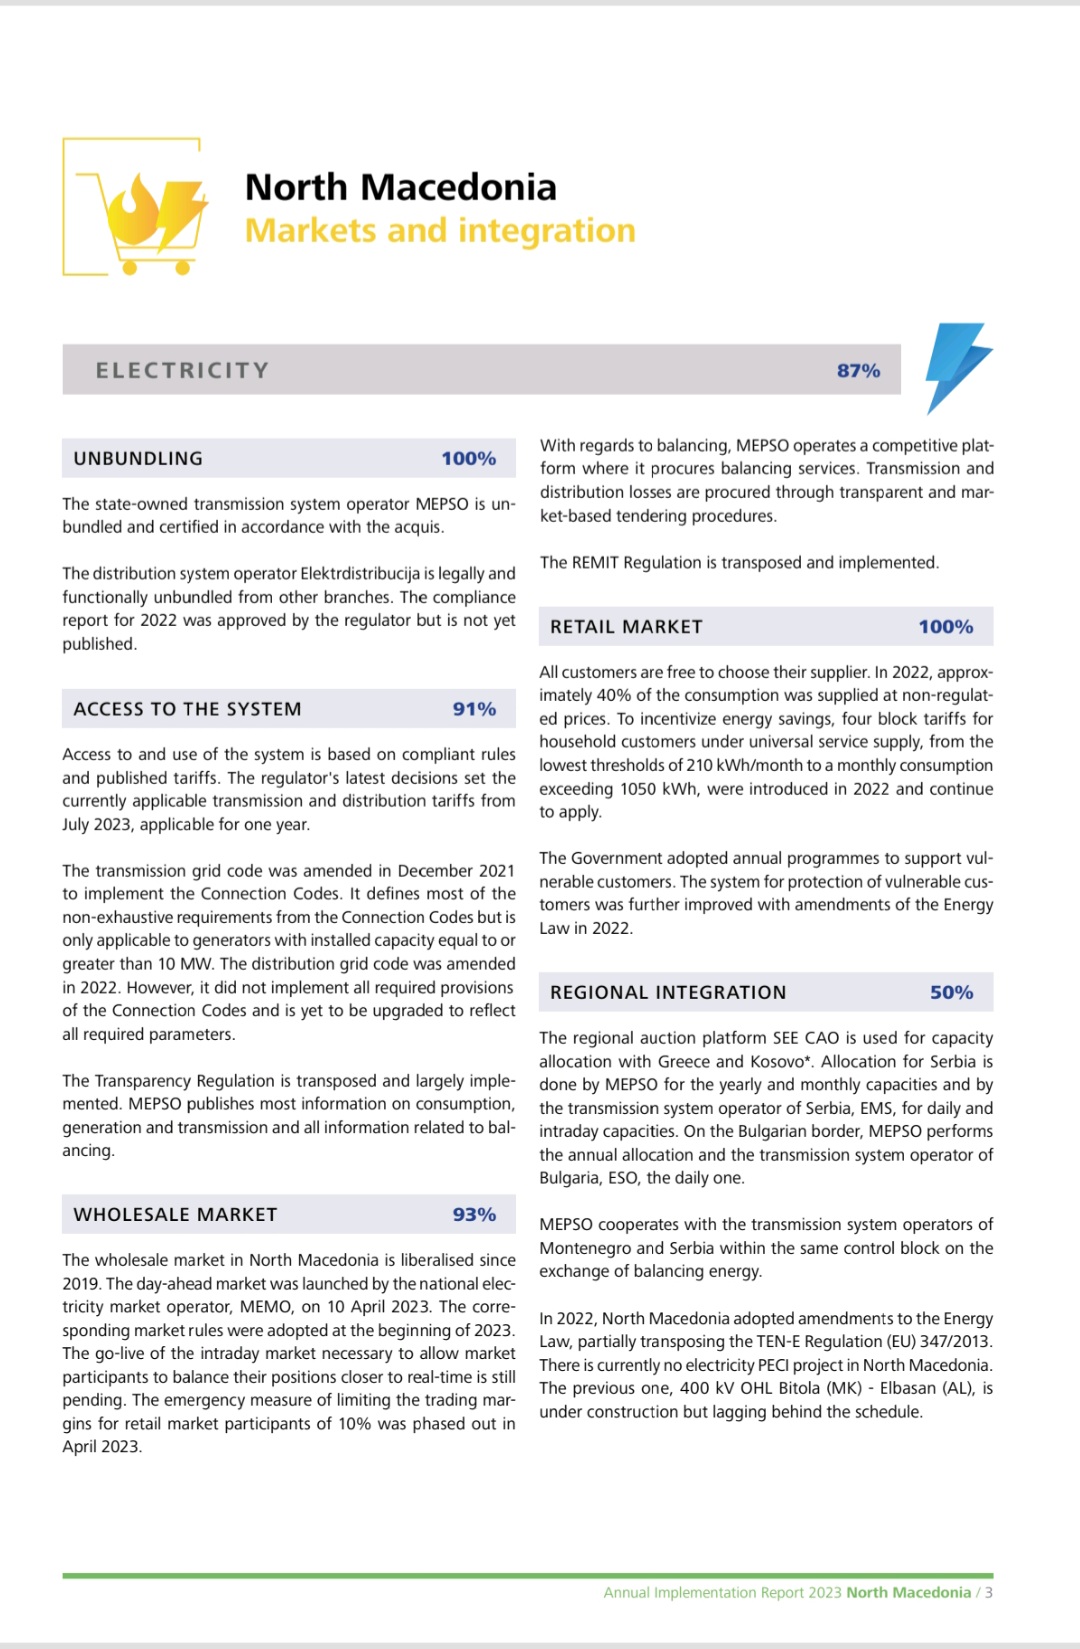 Raporti vjetor i Komunitetit evropian të energjetikës